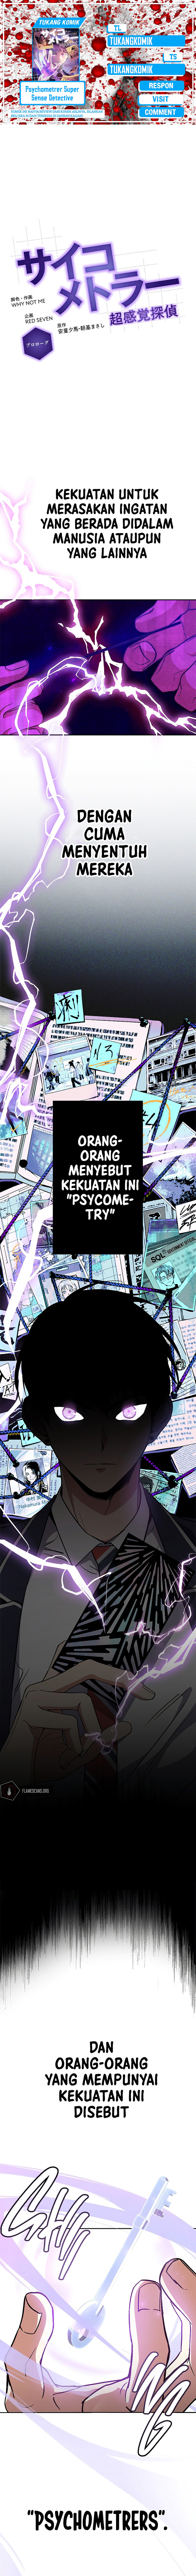 Psychometrer Super Sense Detective Chapter 0 - 31